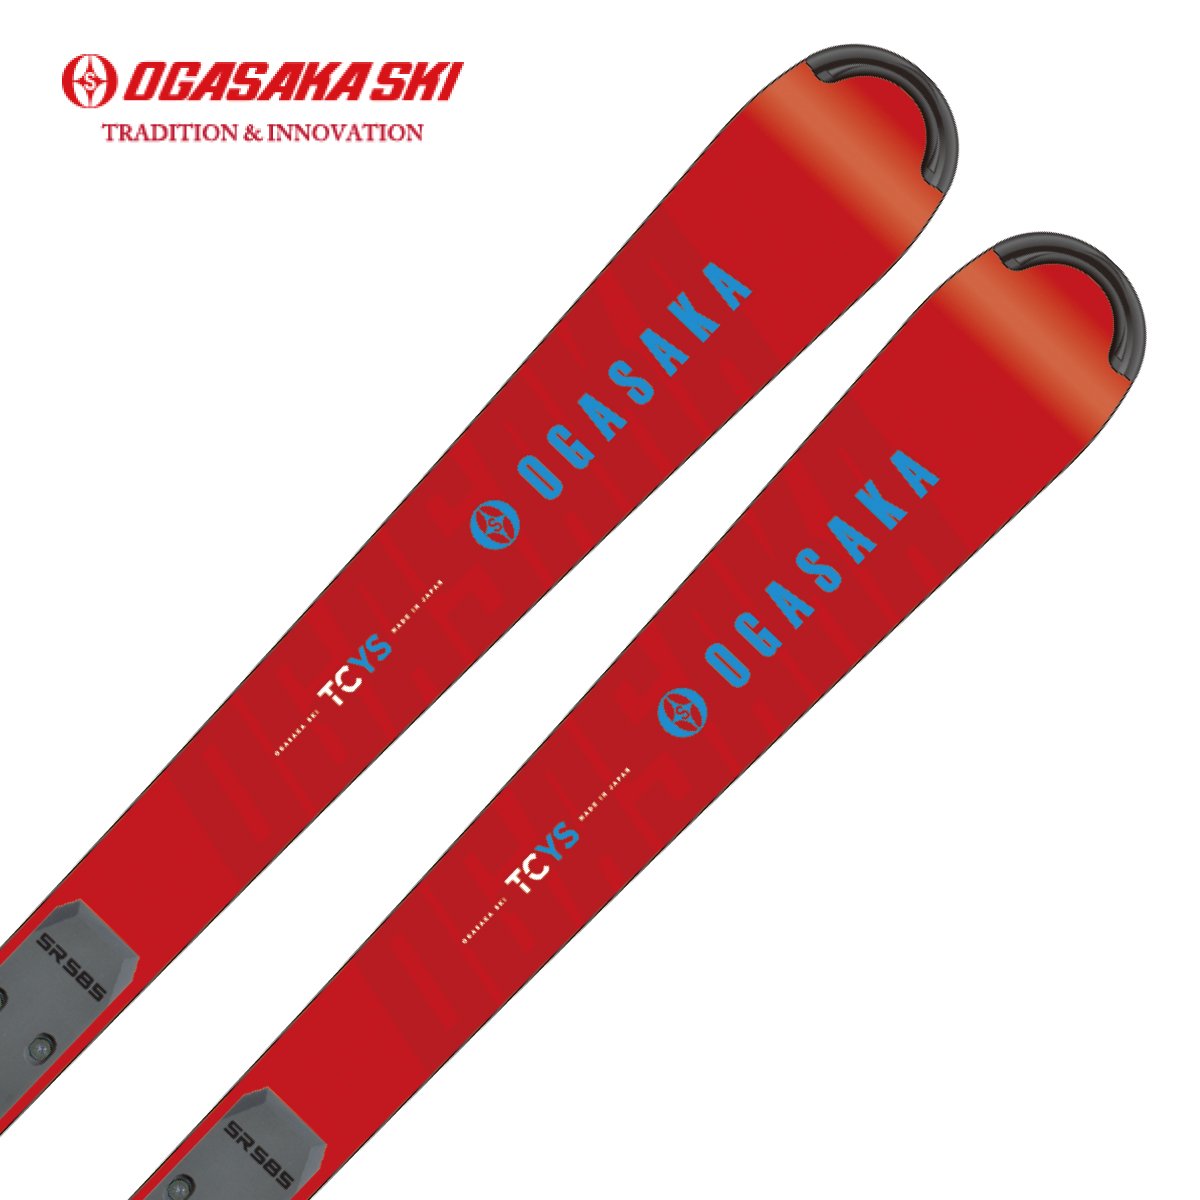 滑雪用品店- 日本品牌滑雪装备和滑雪服饰的顶级零售商